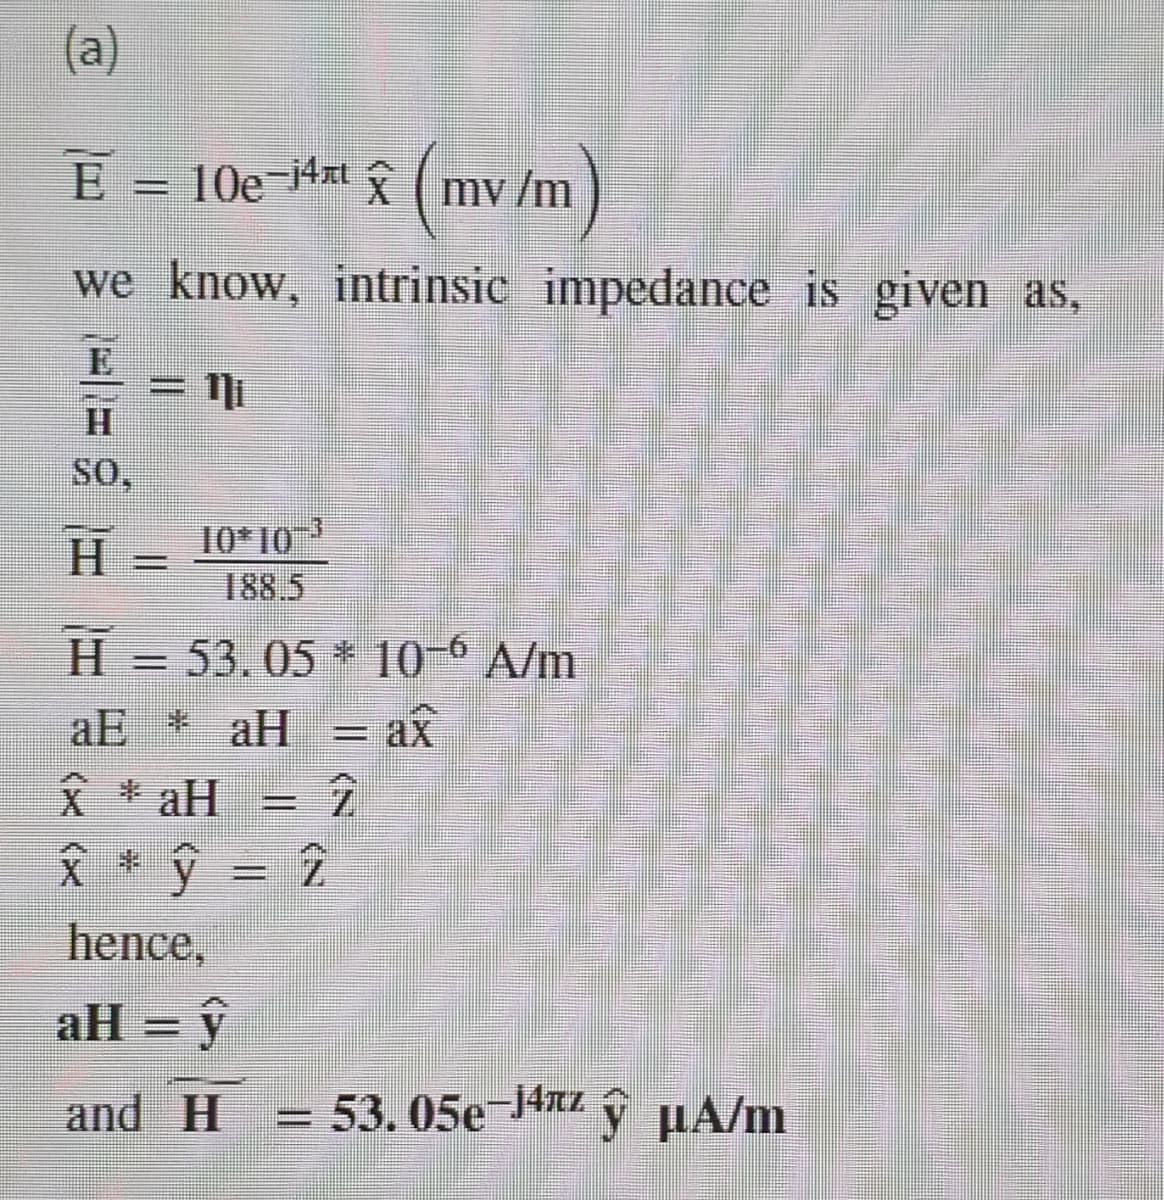 (a)
E = 10e¬4xt ( mv /m
we know, intrinsic impedance is given as,
E
= Ni
H.
SO,
10* 103
188.5
H.
H = 53.05 * 10-° A/m
= ax
aE * aH
父* aH
Å * ŷ = 2
hence,
aH = ŷ
and H
= 53.05e-J4nz
ý µA/m
